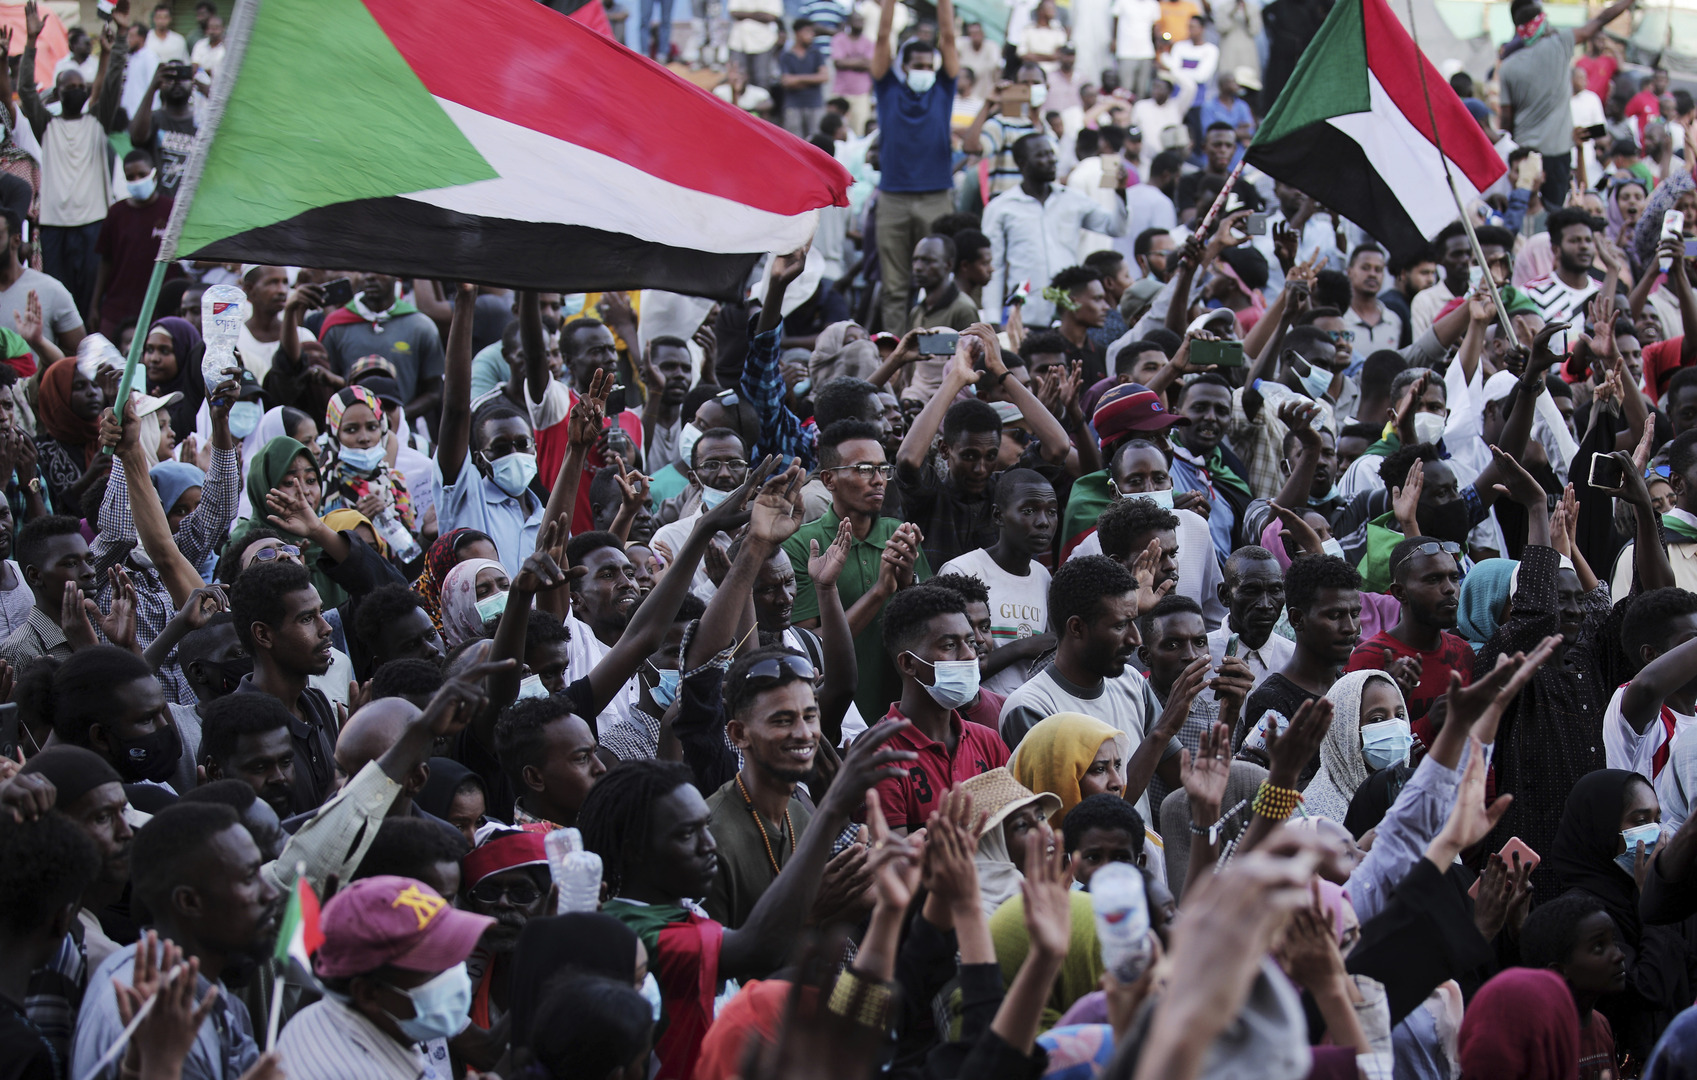 لجنة أطباء السودان: 15 قتيلا برصاص الجيش خلال مظاهرات اليوم الأربعاء